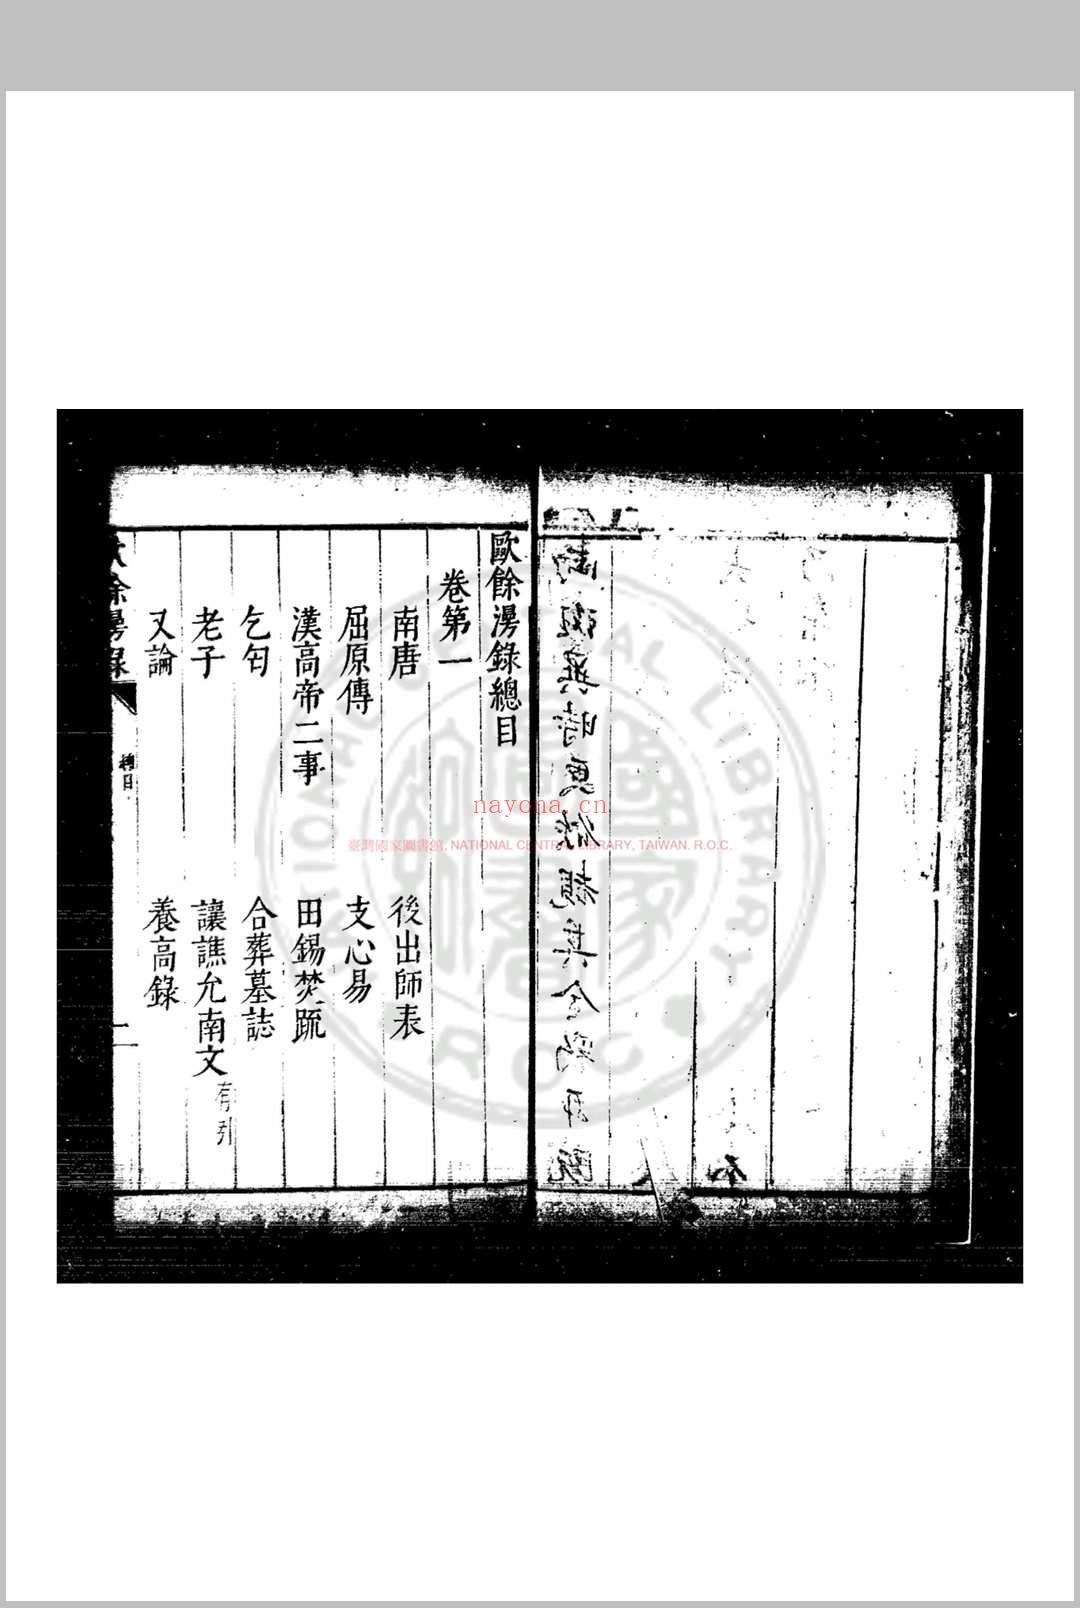 欧馀漫录 (明)闵元衢撰 明万历间(1573-1620)刊本